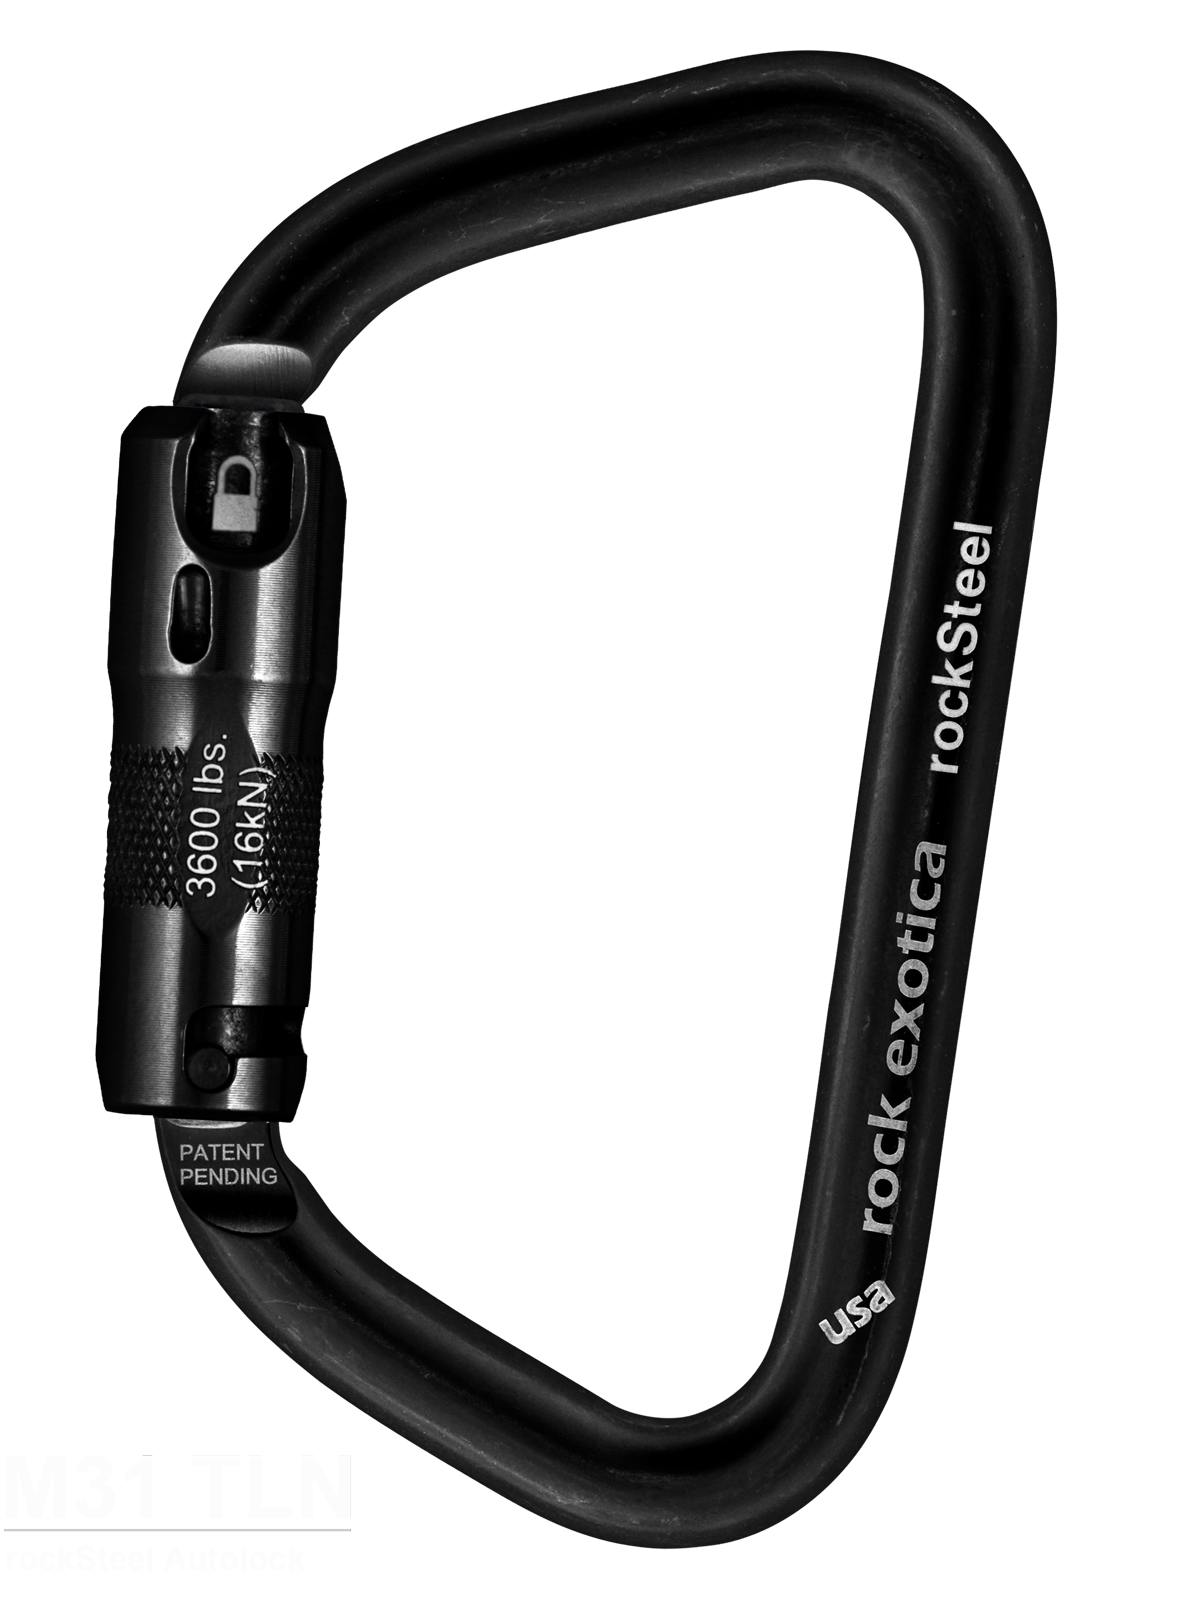 rockSteel Autolock Carabiner in Black